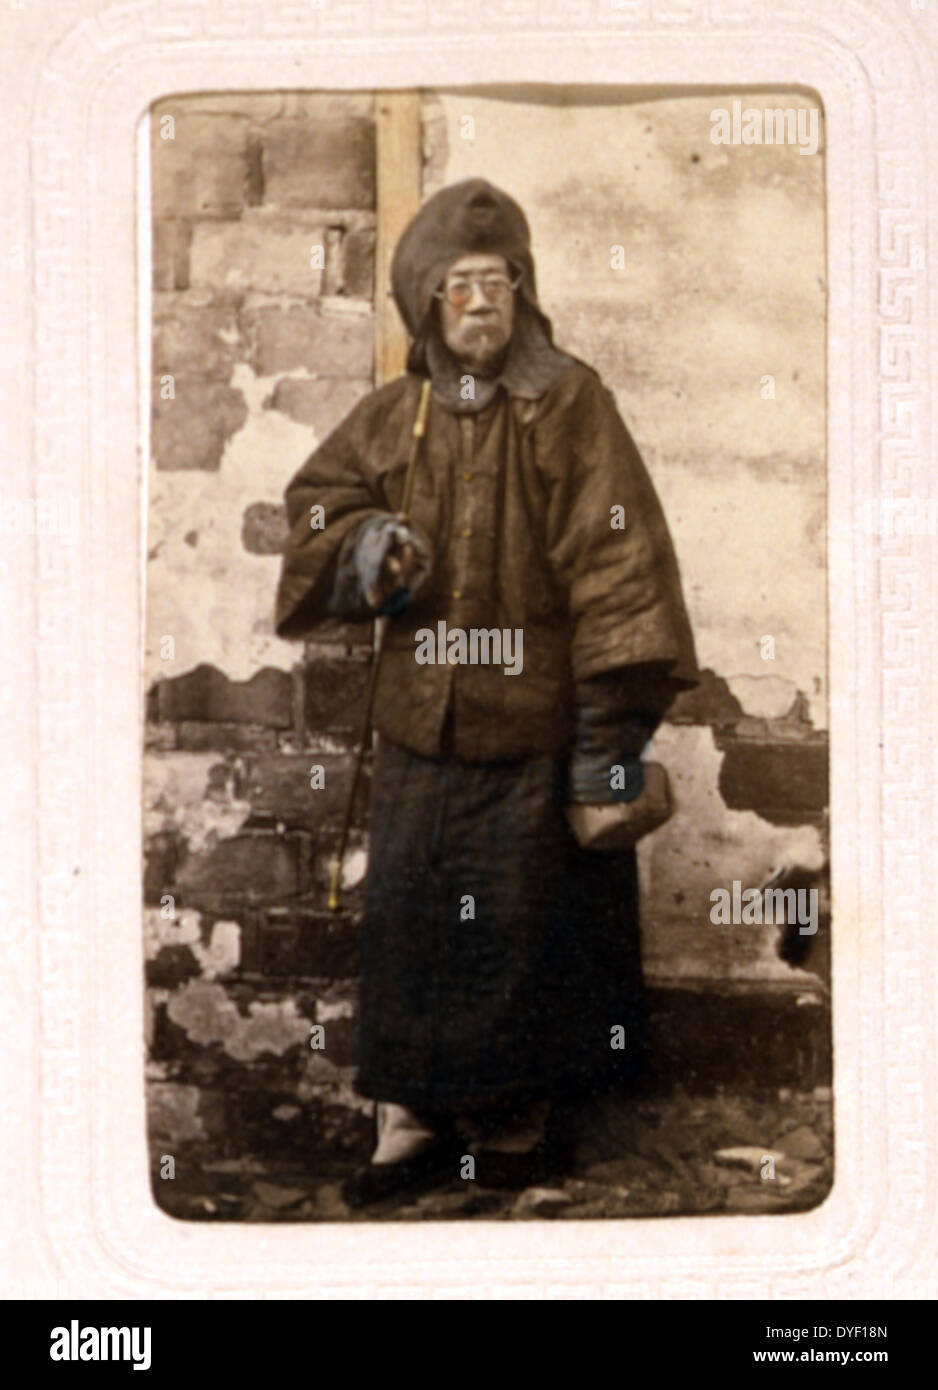 Portraits de Chinois un homme âgé portant des lunettes par John Thomson, 1837-1921, photographe. Publié entre 1870 et 1872 Banque D'Images